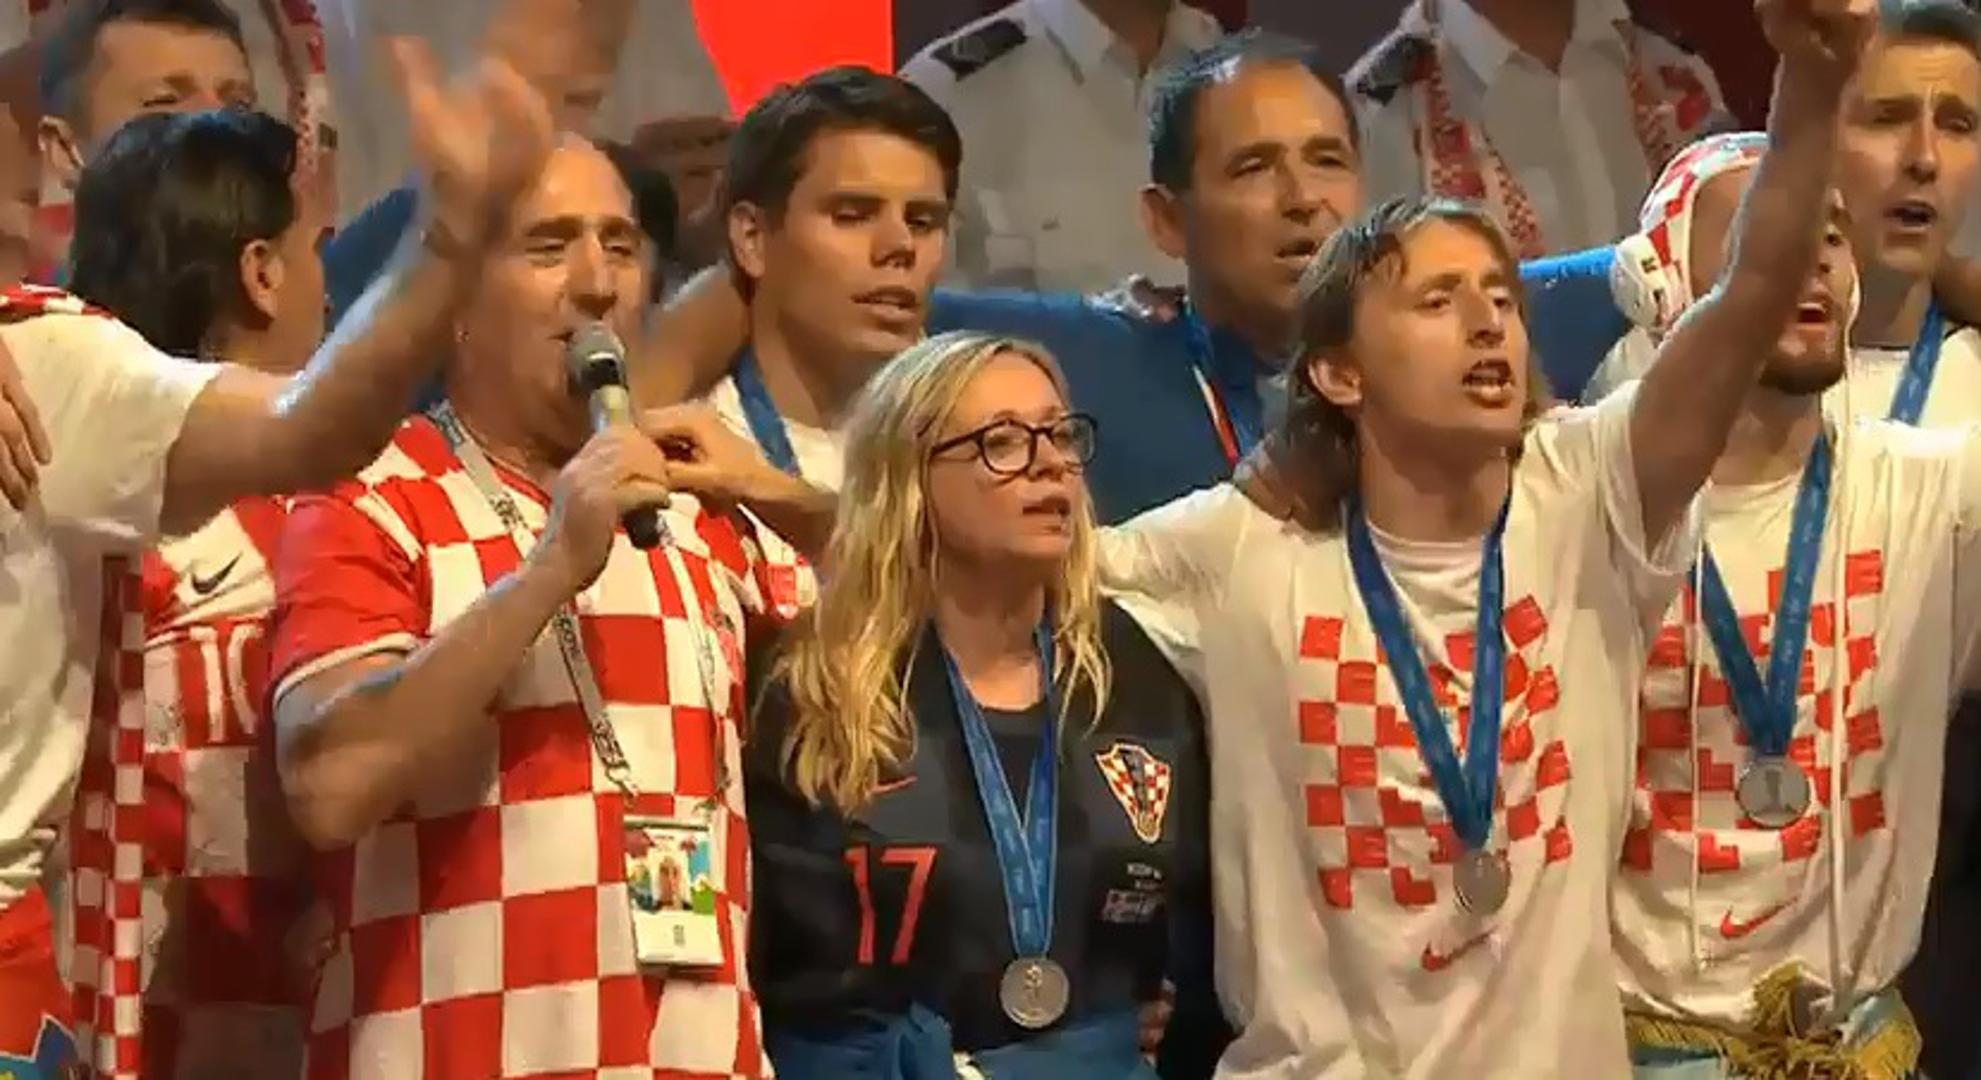 Slavlje tu nije stalo. Kako su sljedećih dana hrvatski reprezentativci odlazili u svoje krajeve, tako su ih i tamo dočekivali razdragani i na svom veselju zahvalni navijači.